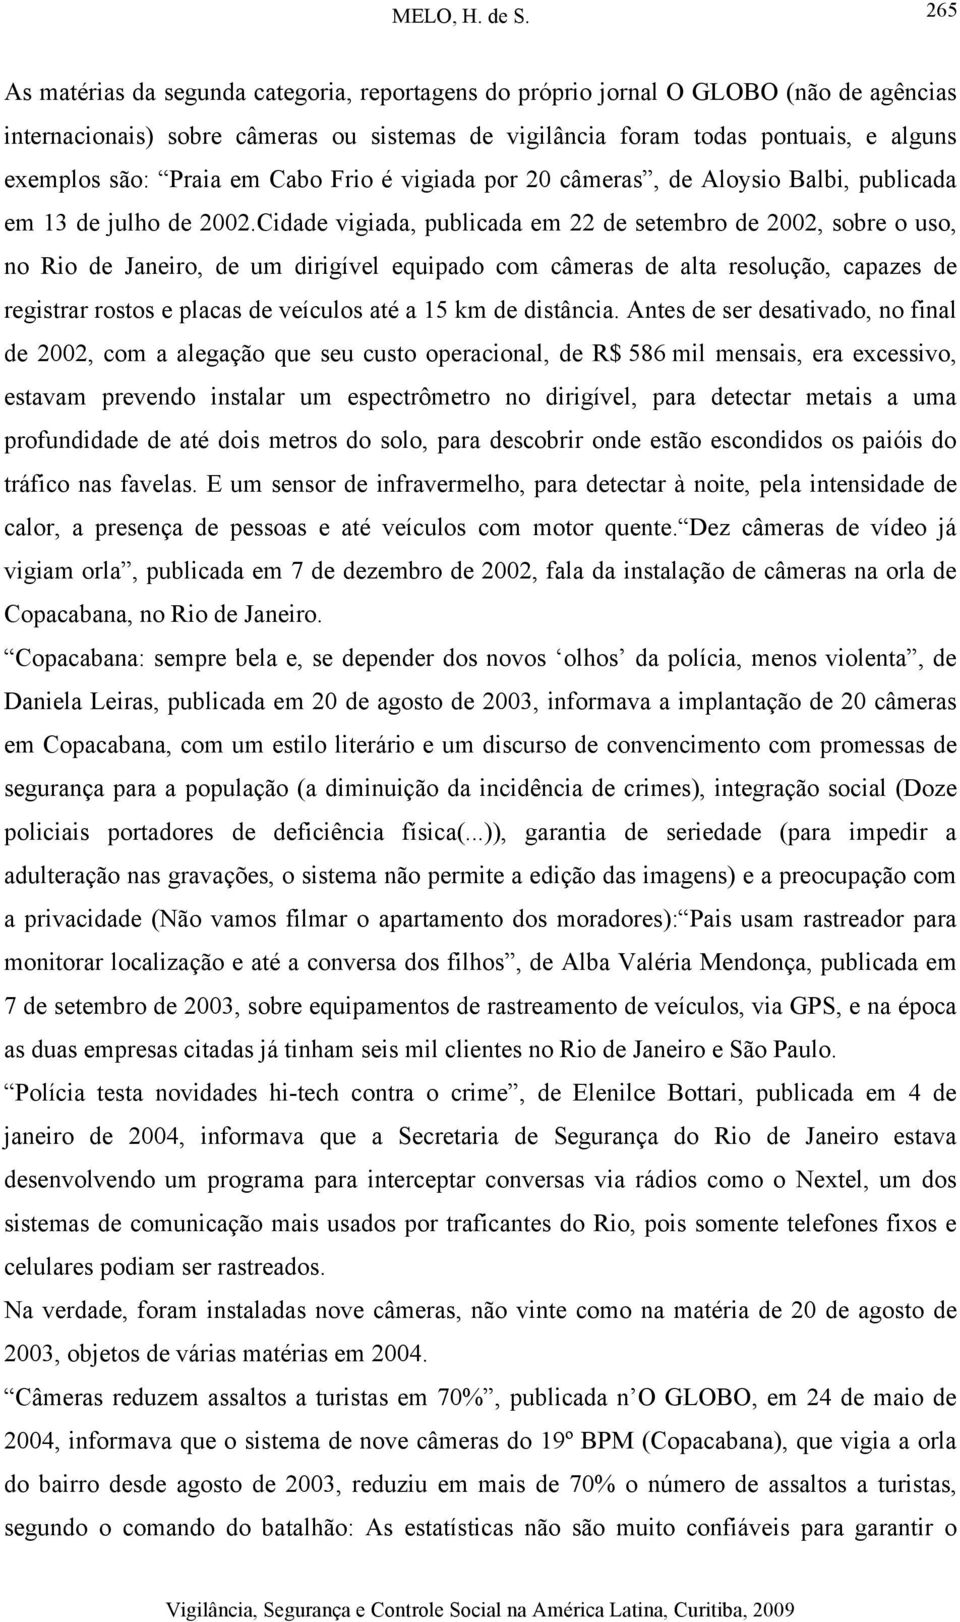 Cidade vigiada, publicada em 22 de setembro de 2002, sobre o uso, no Rio de Janeiro, de um dirigível equipado com câmeras de alta resolução, capazes de registrar rostos e placas de veículos até a 15